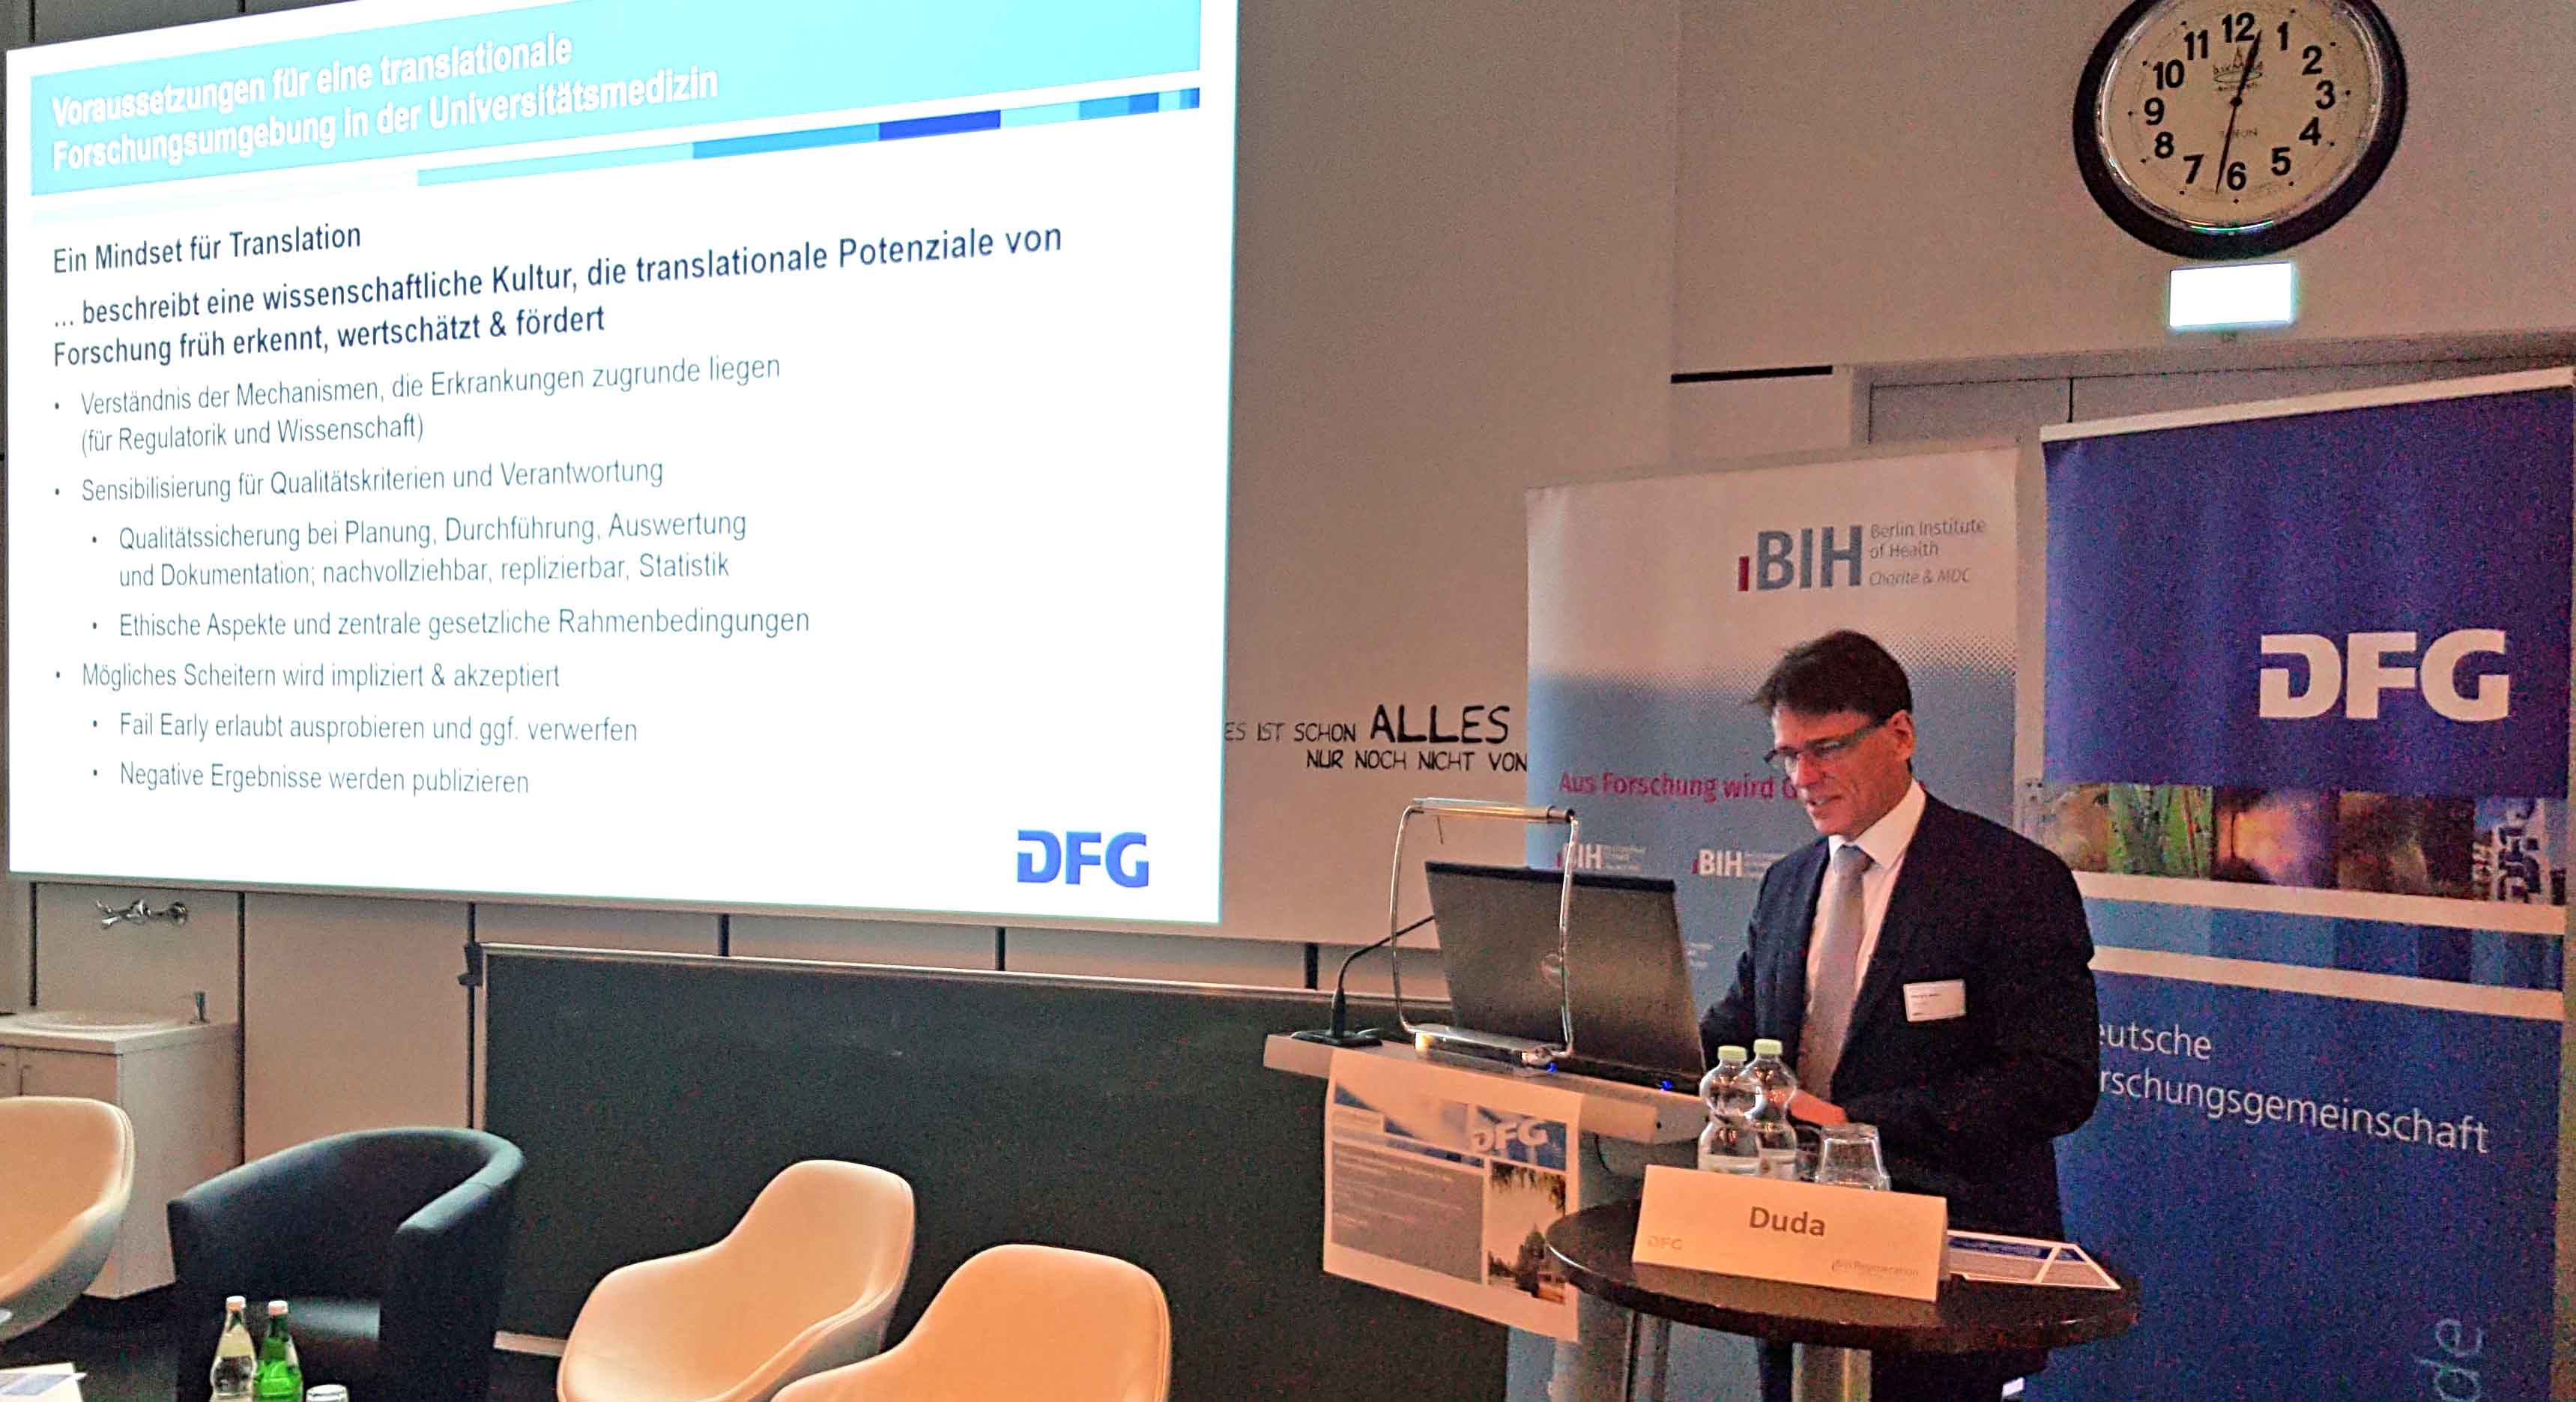 Prof. Georg Duda präsentiert die DFG Empfehlungen zur Förderung translationaler Forschung in der Universitätsmedizin.